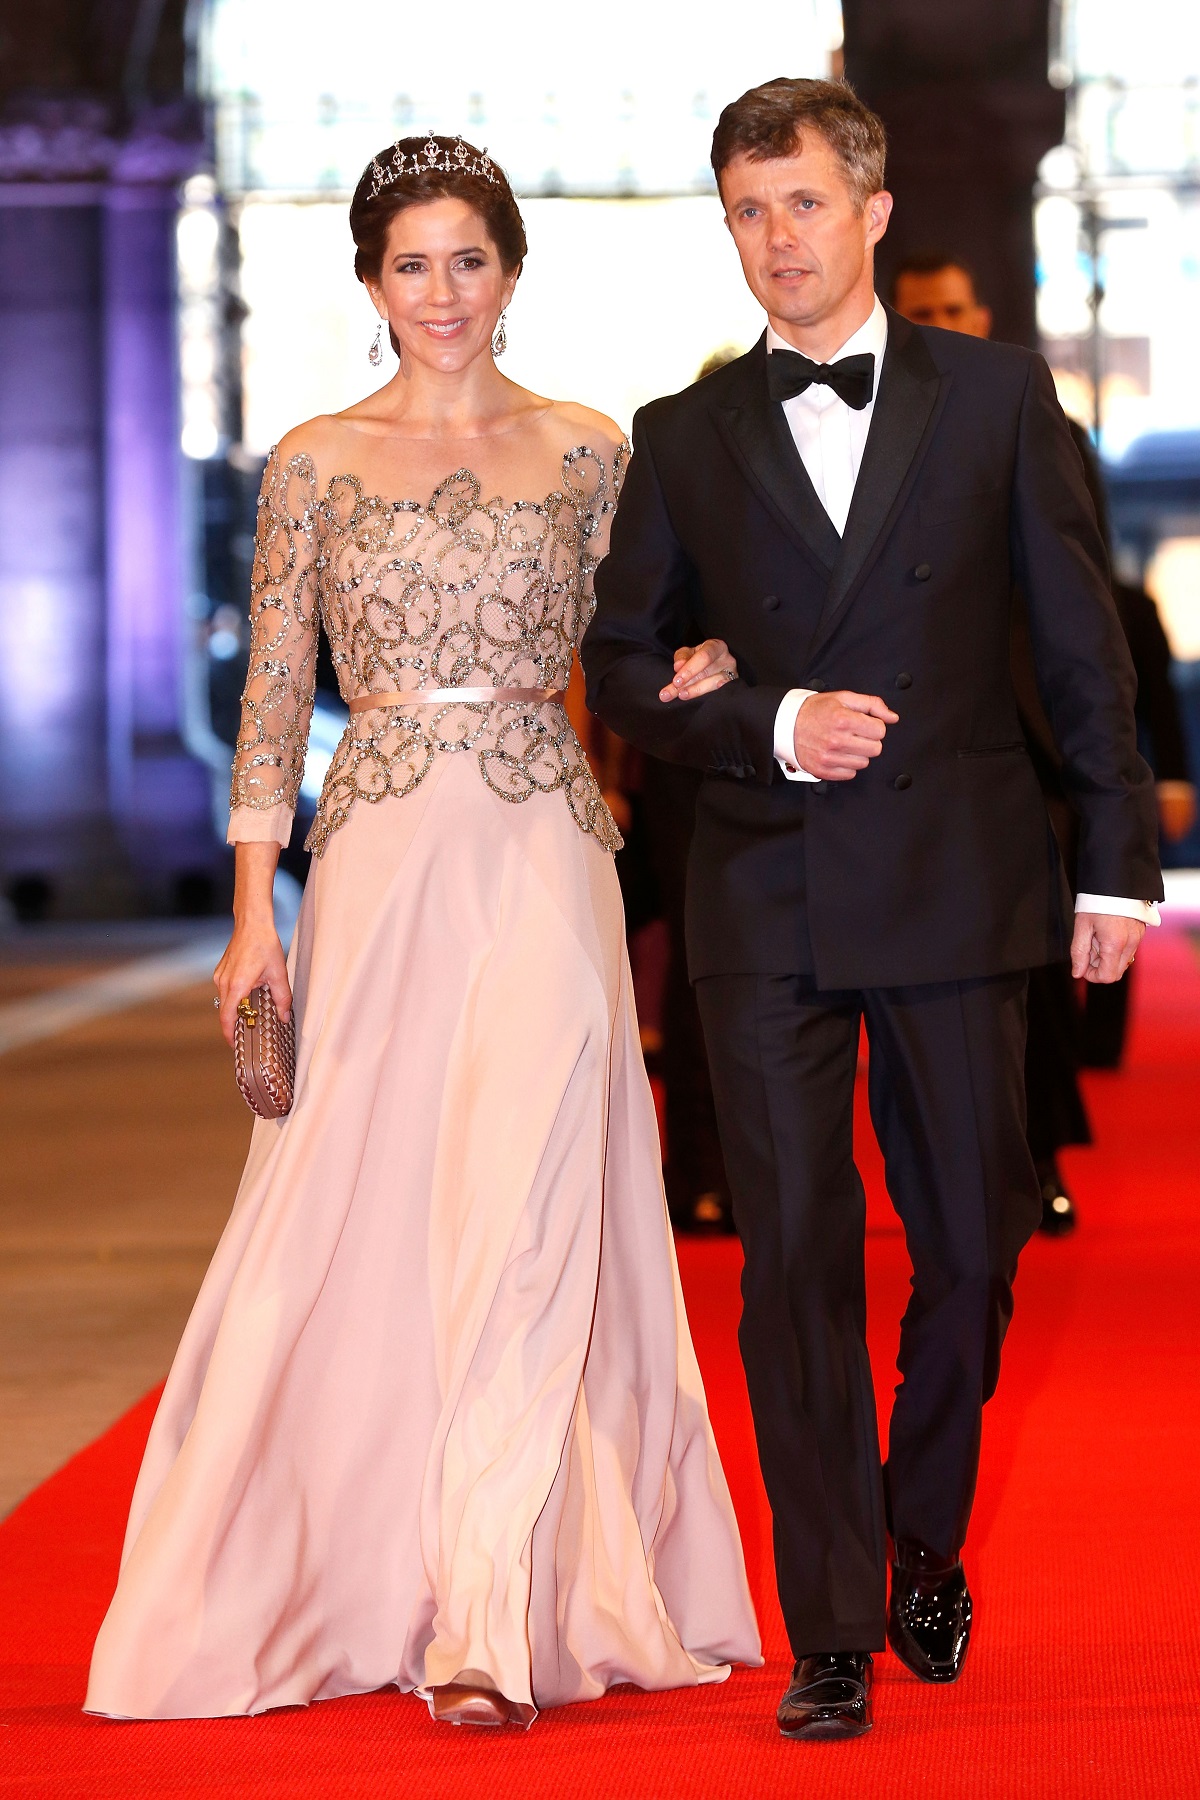 Prințesa Mary și Prințul Frederik în ținute elegante la un eveniment oficial din Danemarca din anul 2013